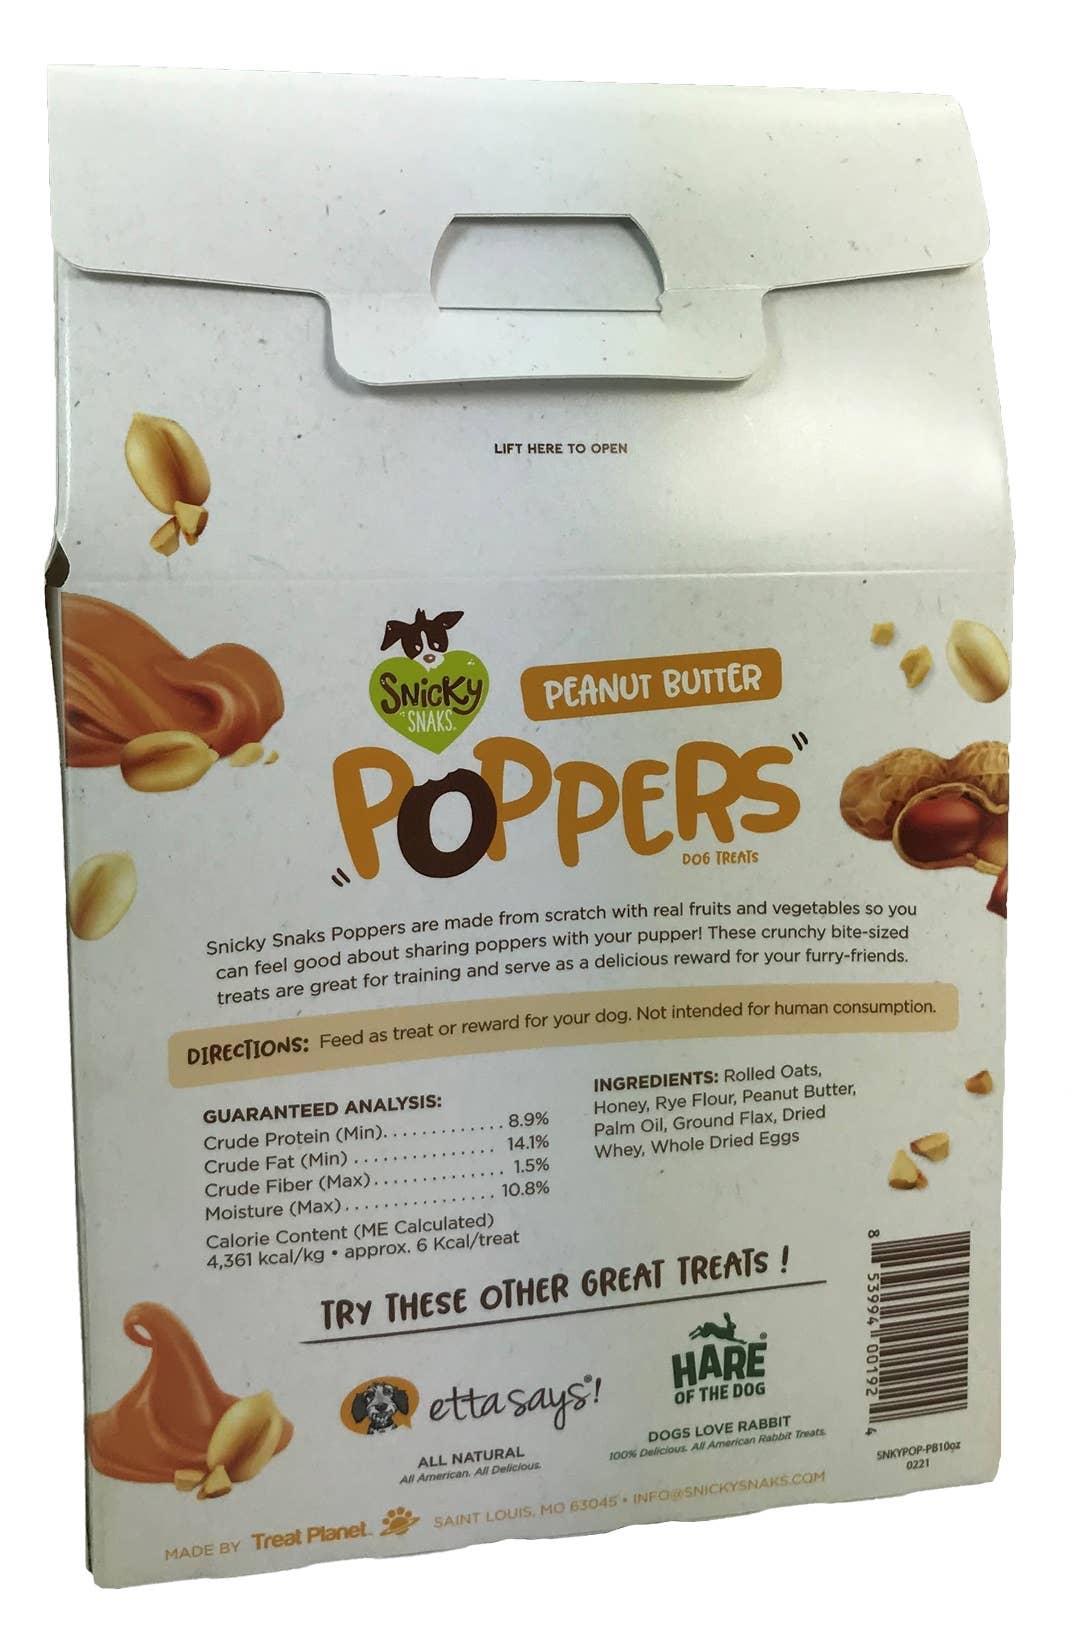 Snicky Snaks Peanut Butter Poppers Treat 10 oz